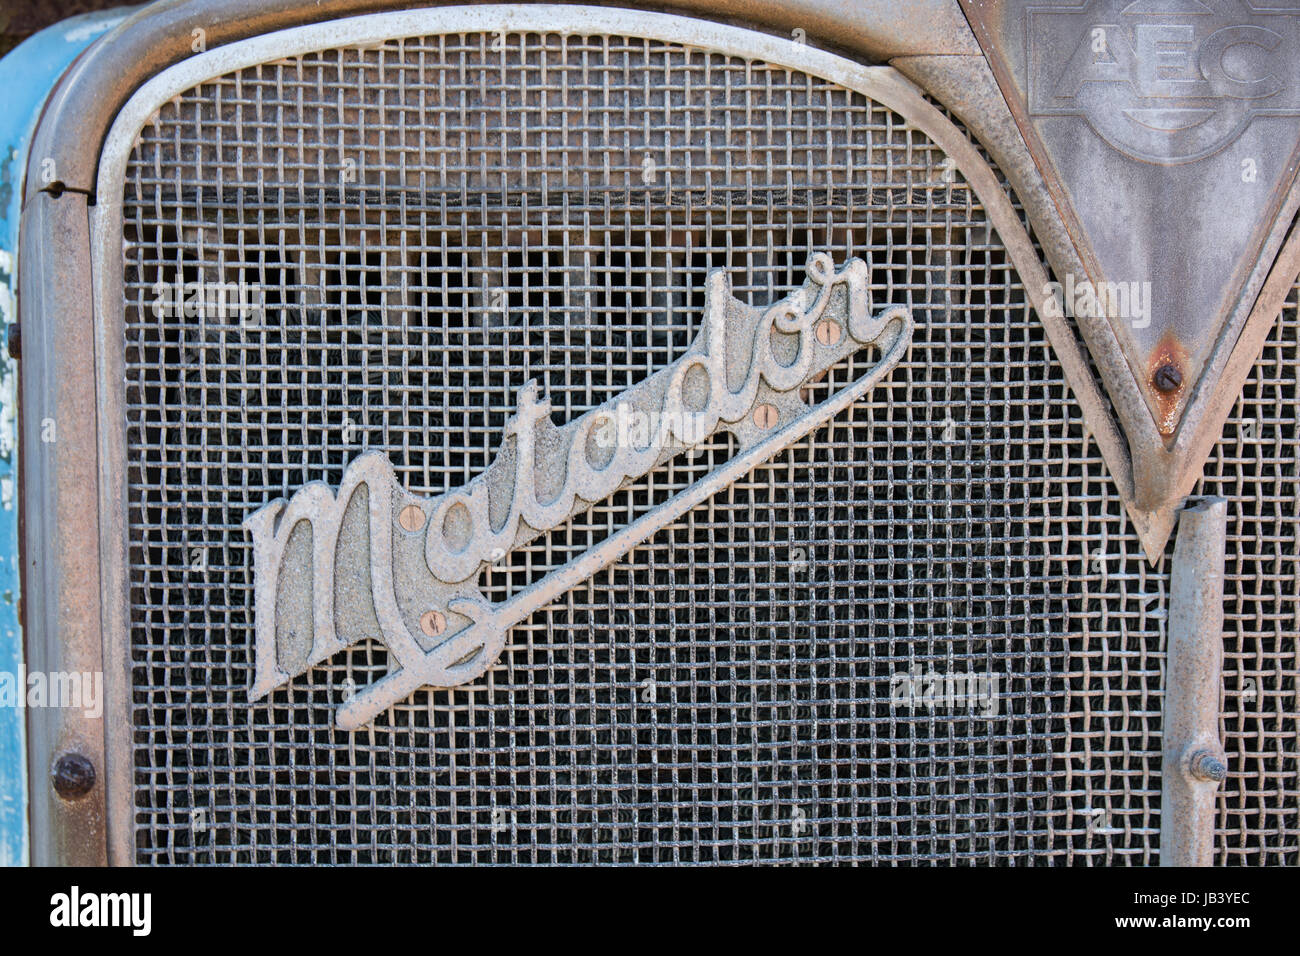 Abzeichen von einem alten AEC Matador Tankwagen in einem Fahrzeug-Friedhof. Stockfoto